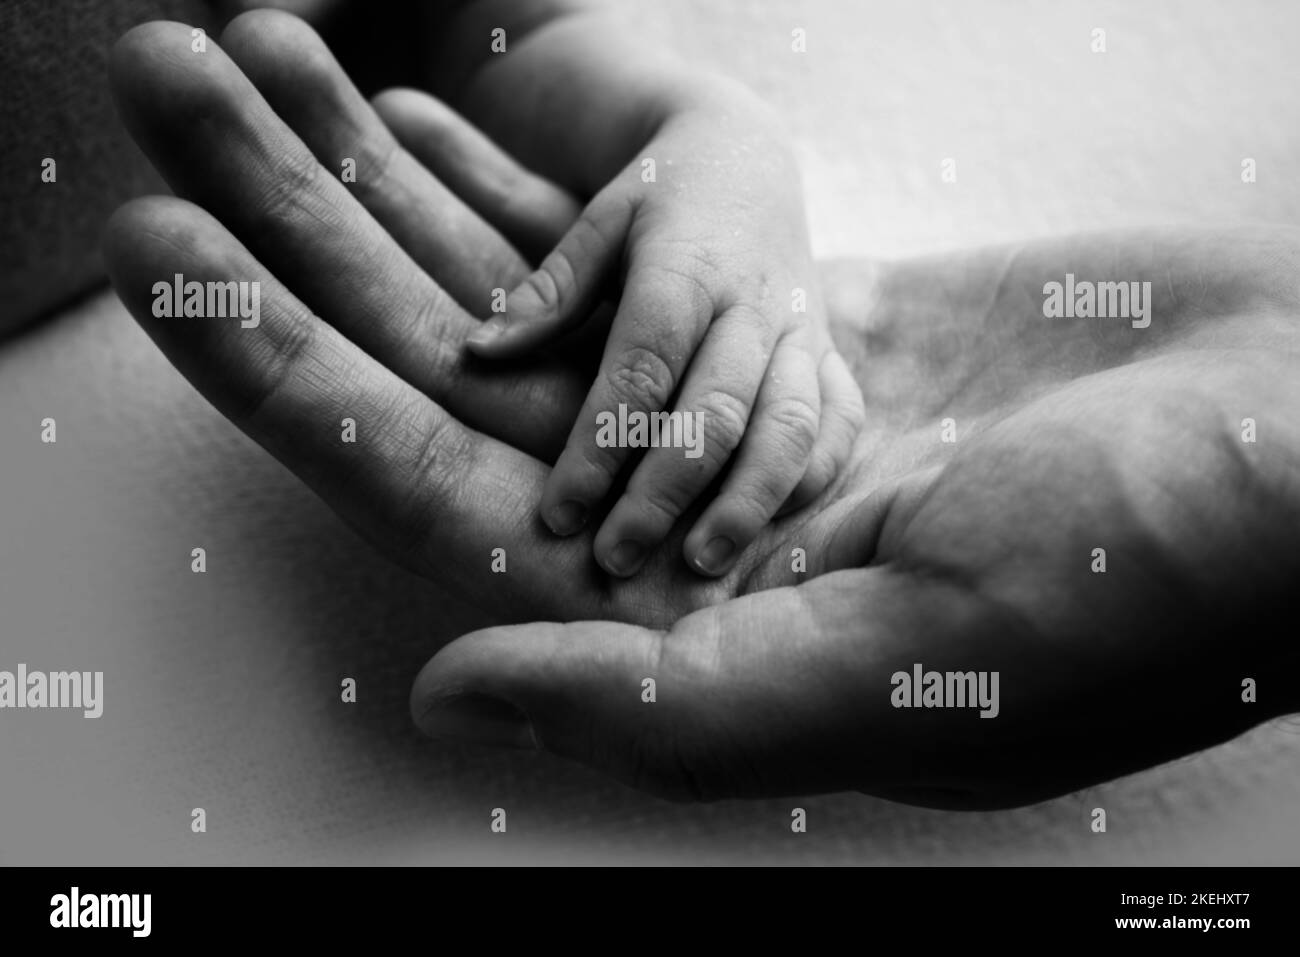 Un genitore tiene la mano di un neonato. Foto in bianco e nero. Foto Stock